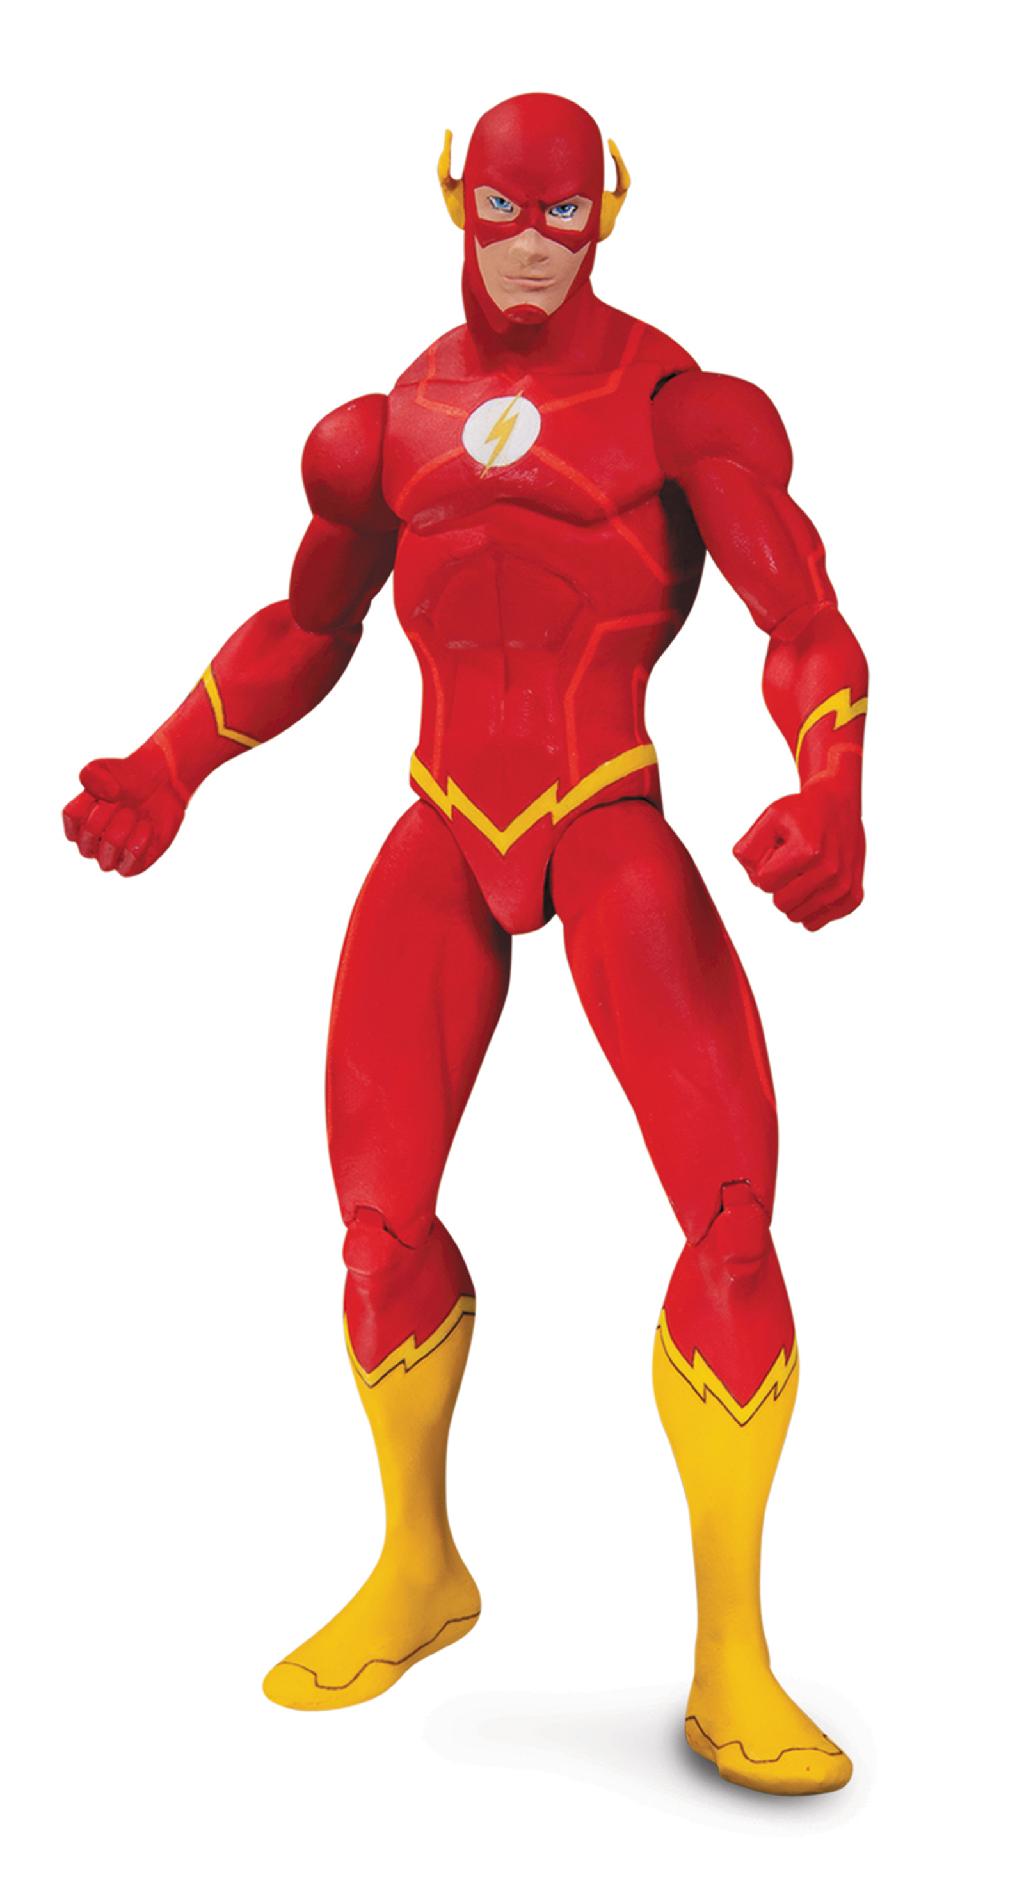 Justice League War Flash Action Figure